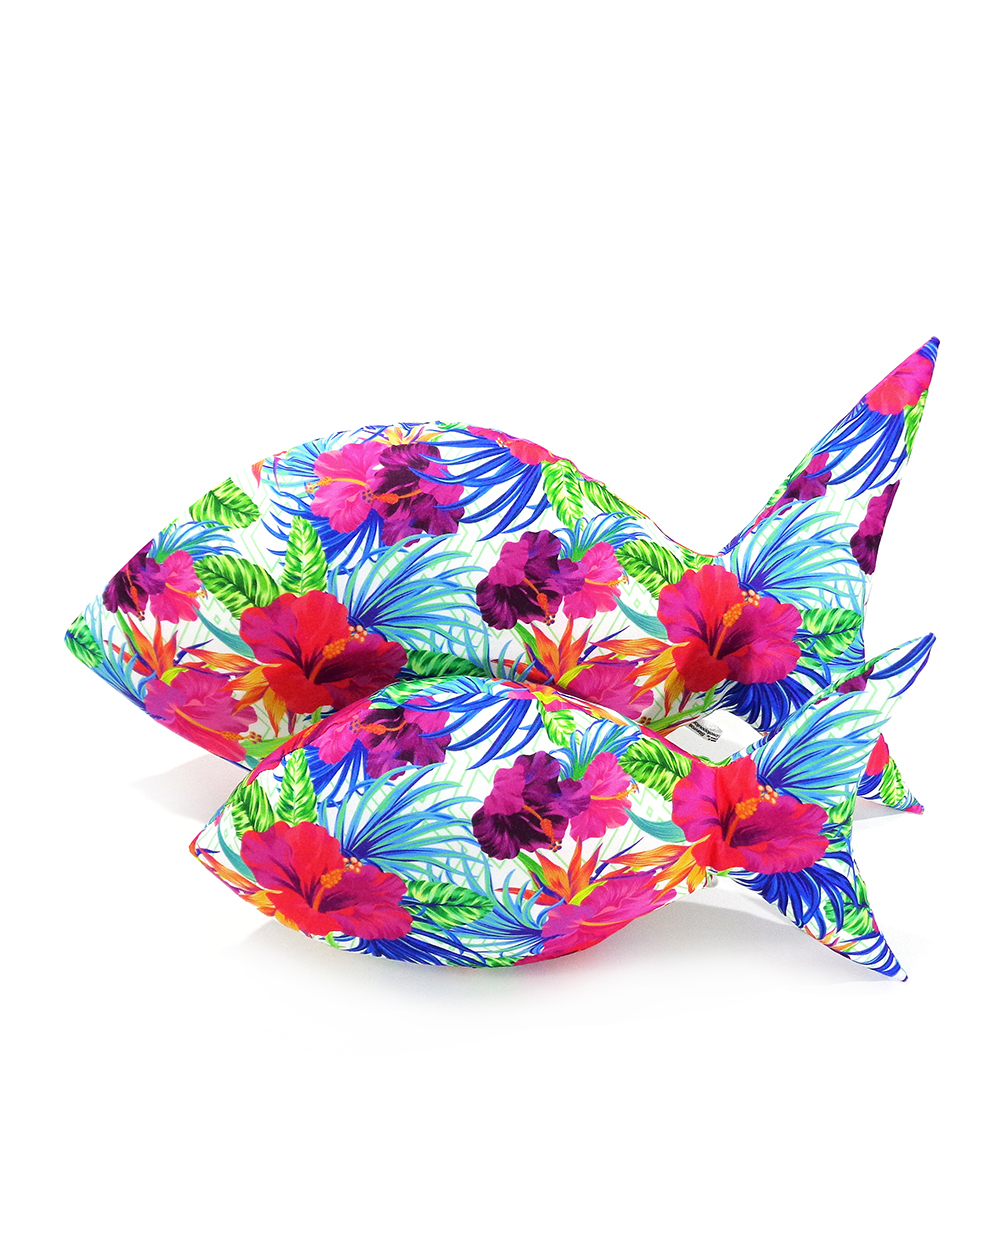 Tropical fish pillow